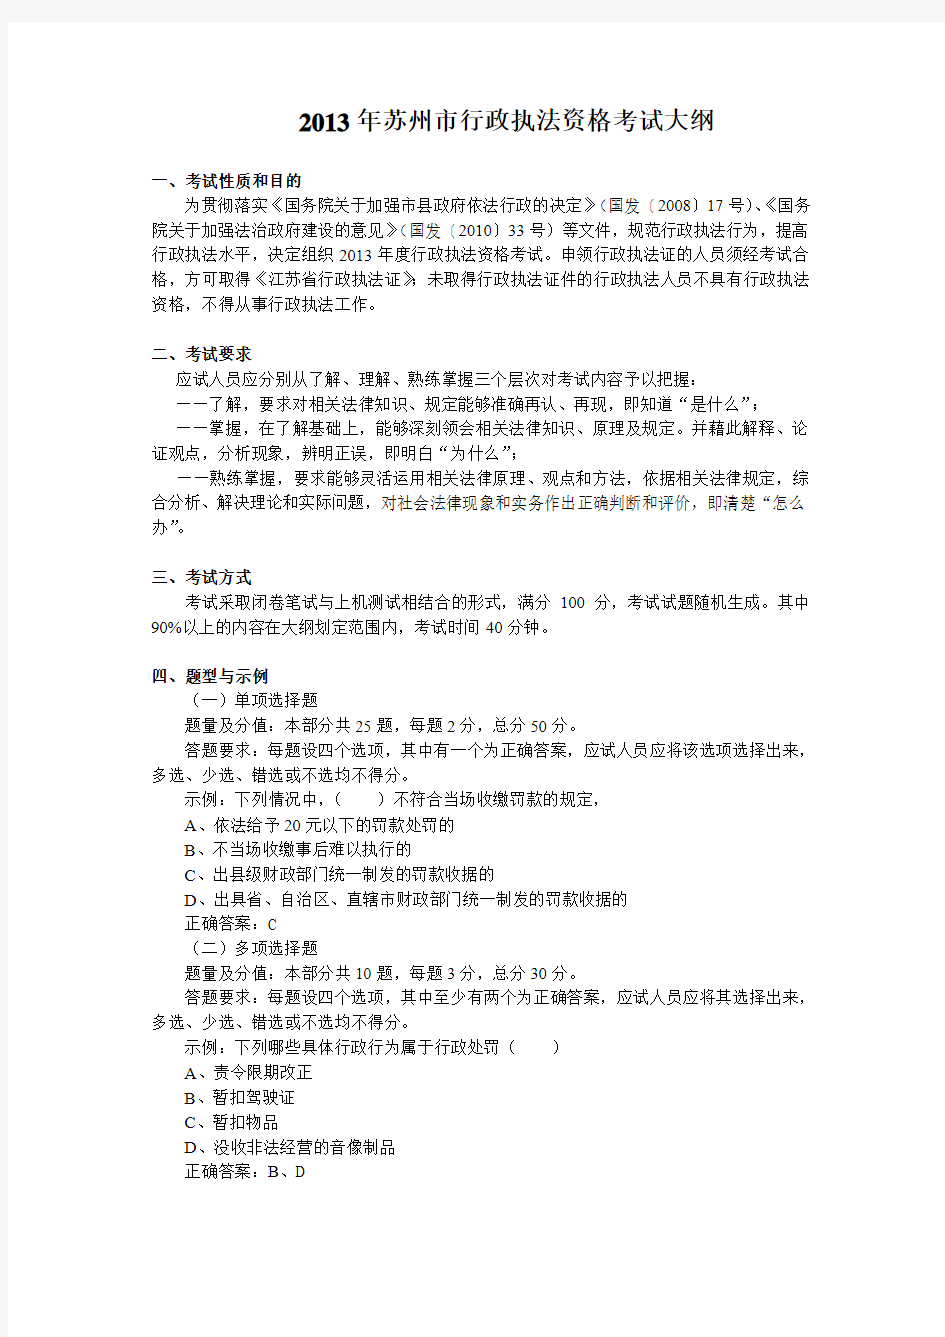 苏州市行政执法人员培训考试大纲(2013版)